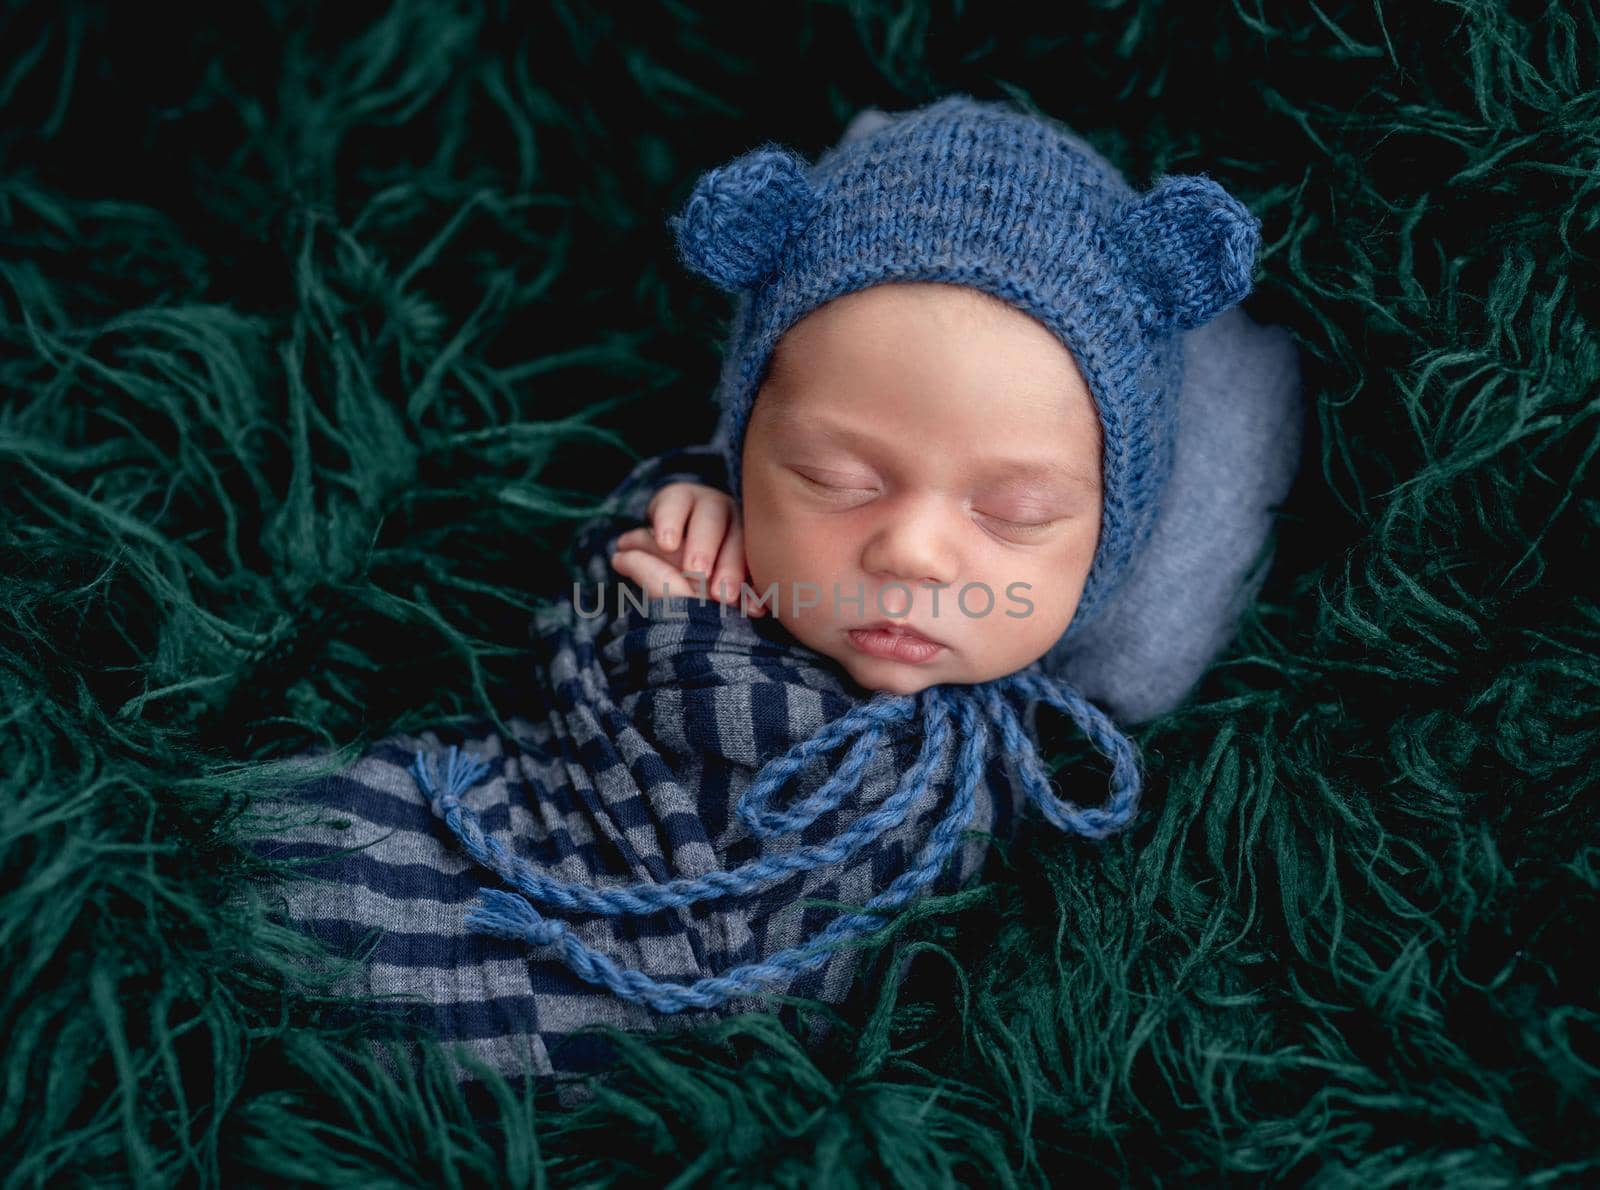 Cute sleeping newborn wearing blue knitted hat by tan4ikk1